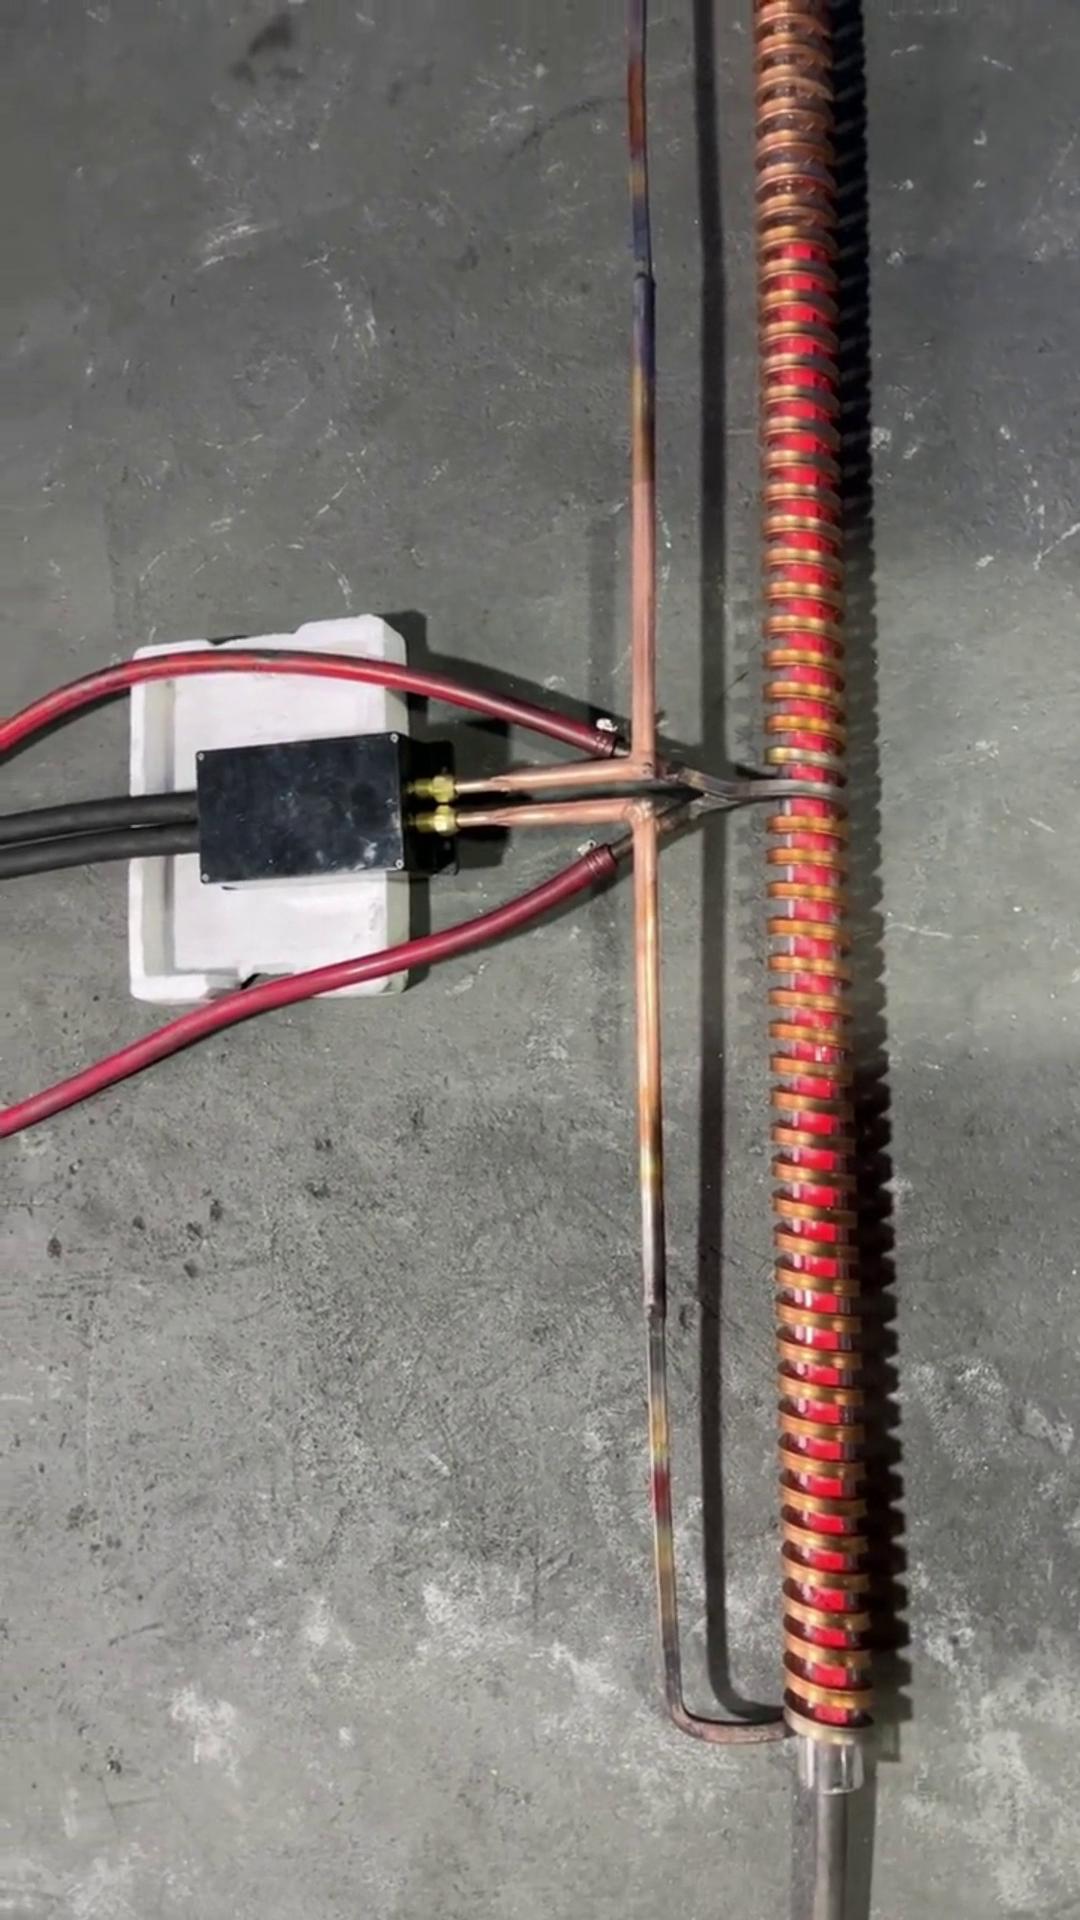 长型线材棒料在线退火试样 后期生产需要配合自动化高频退火设备